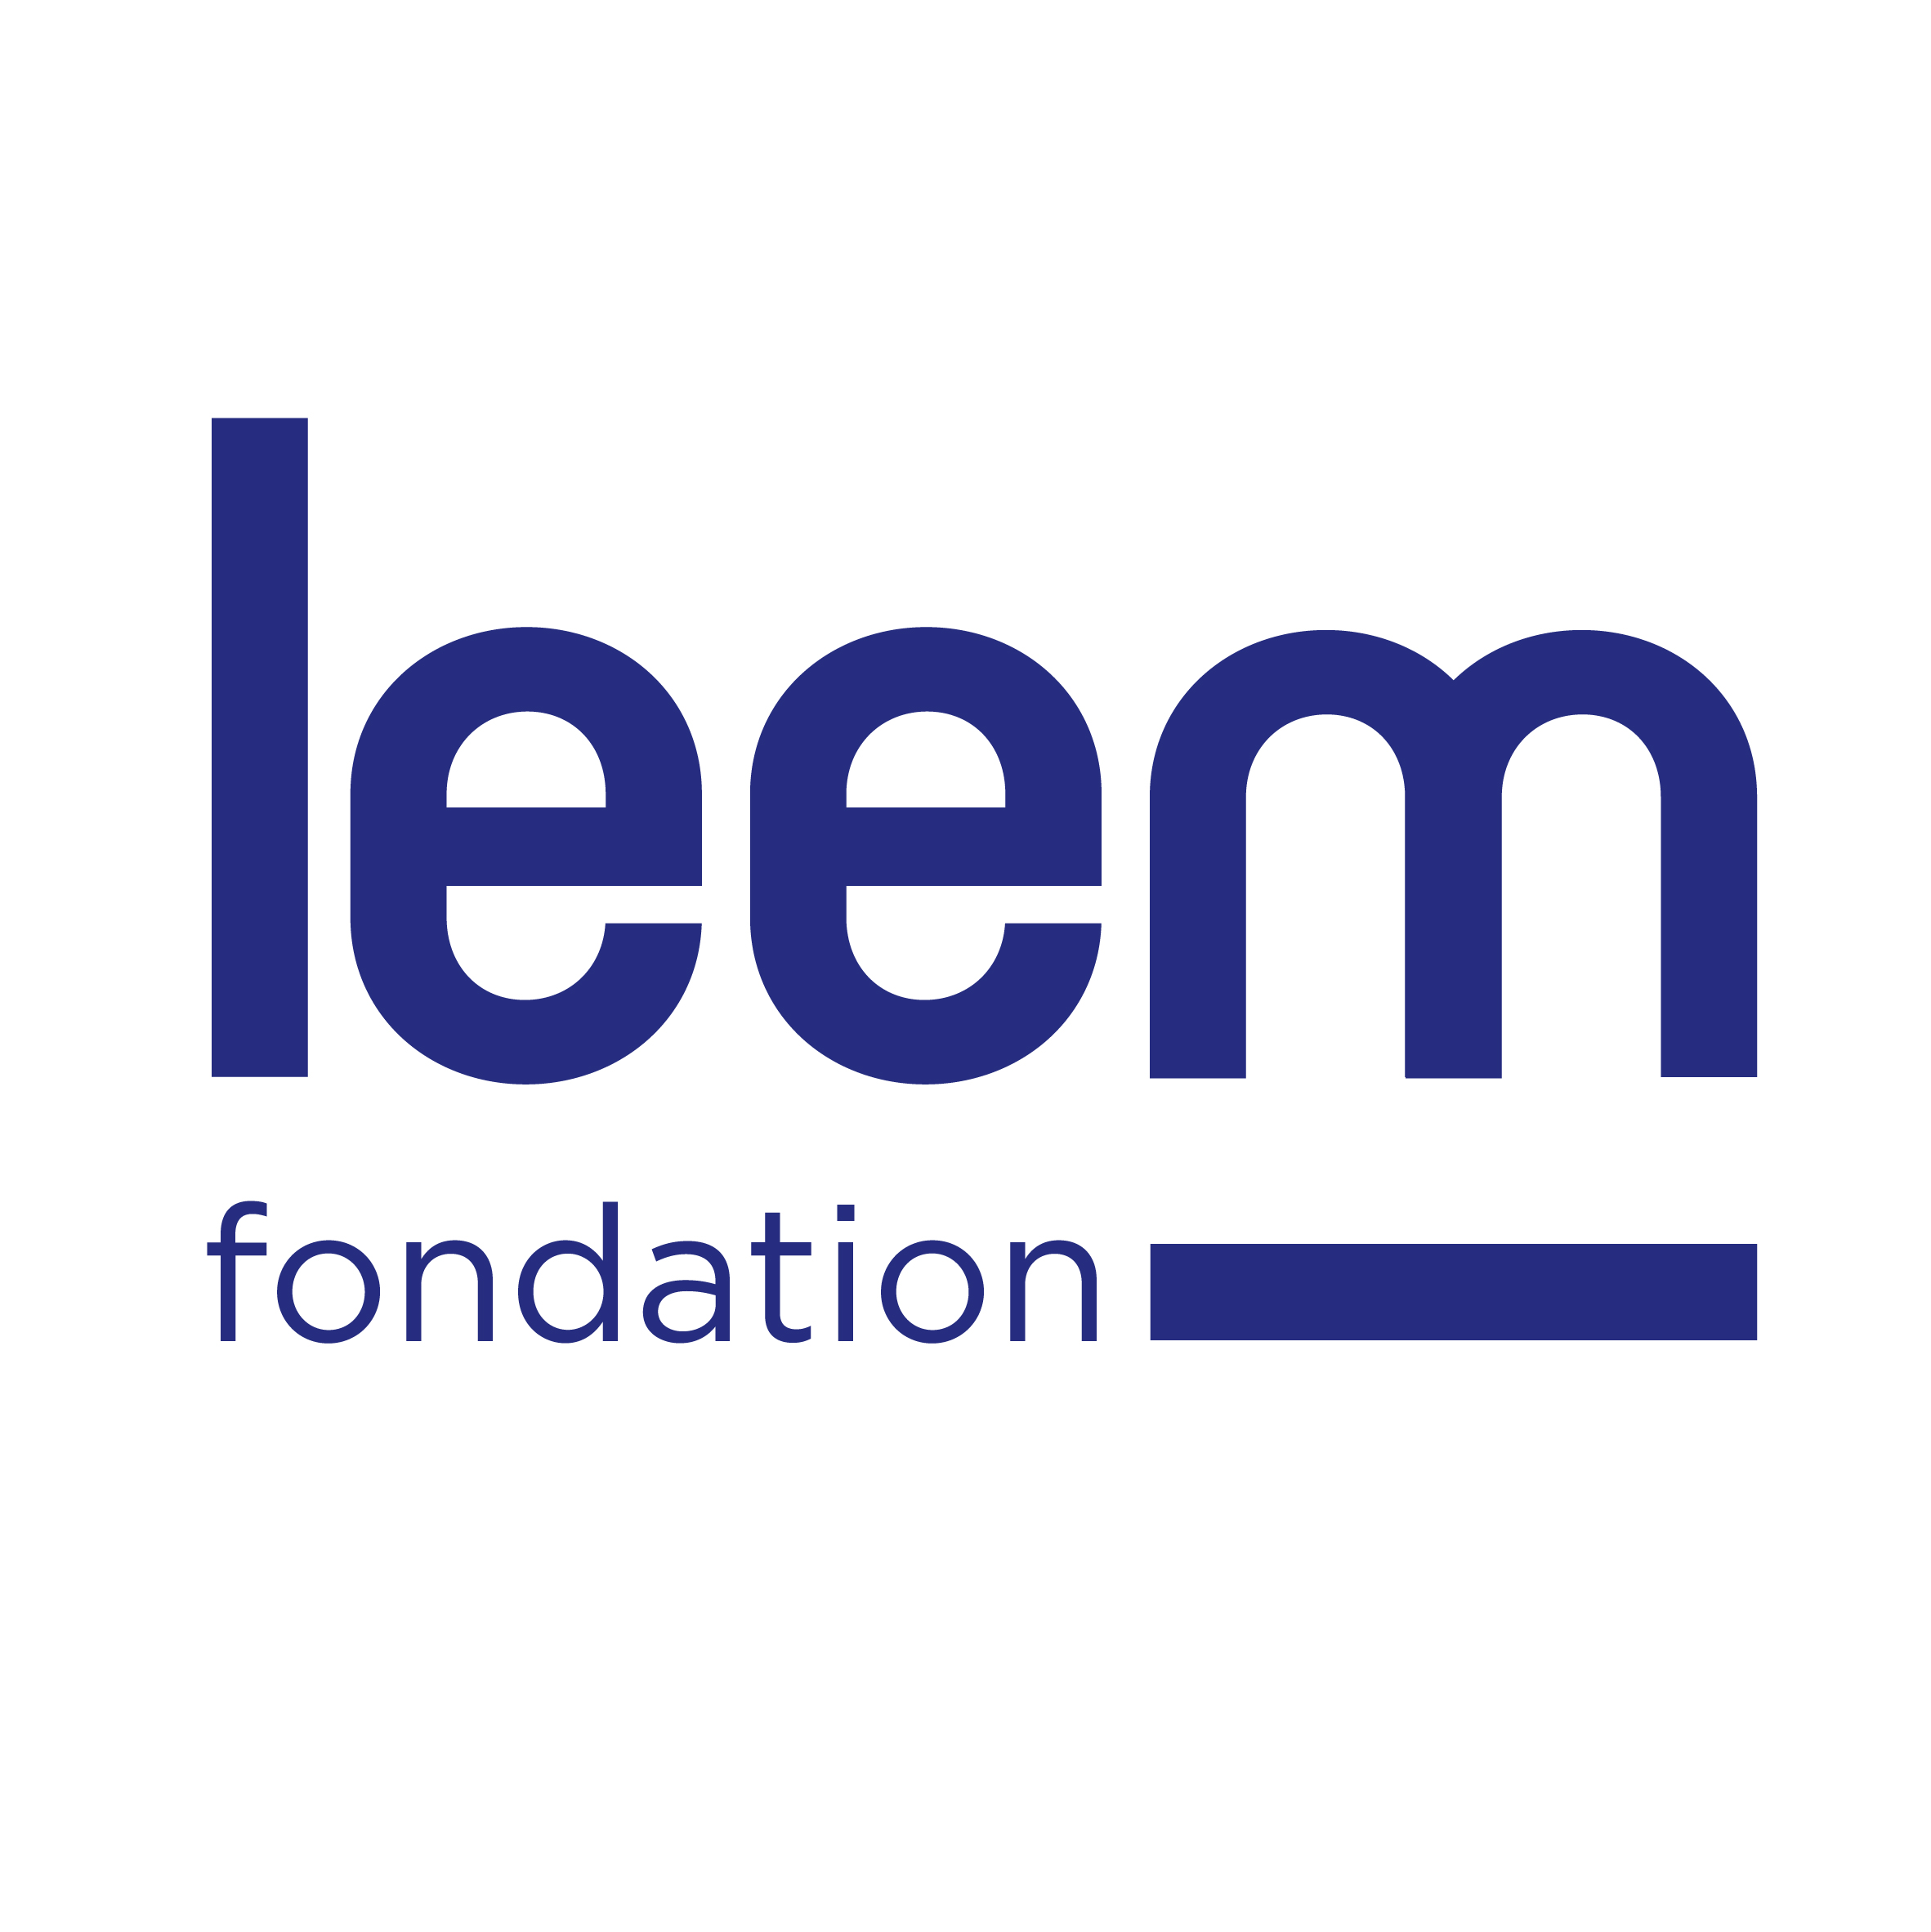 Logo Leem